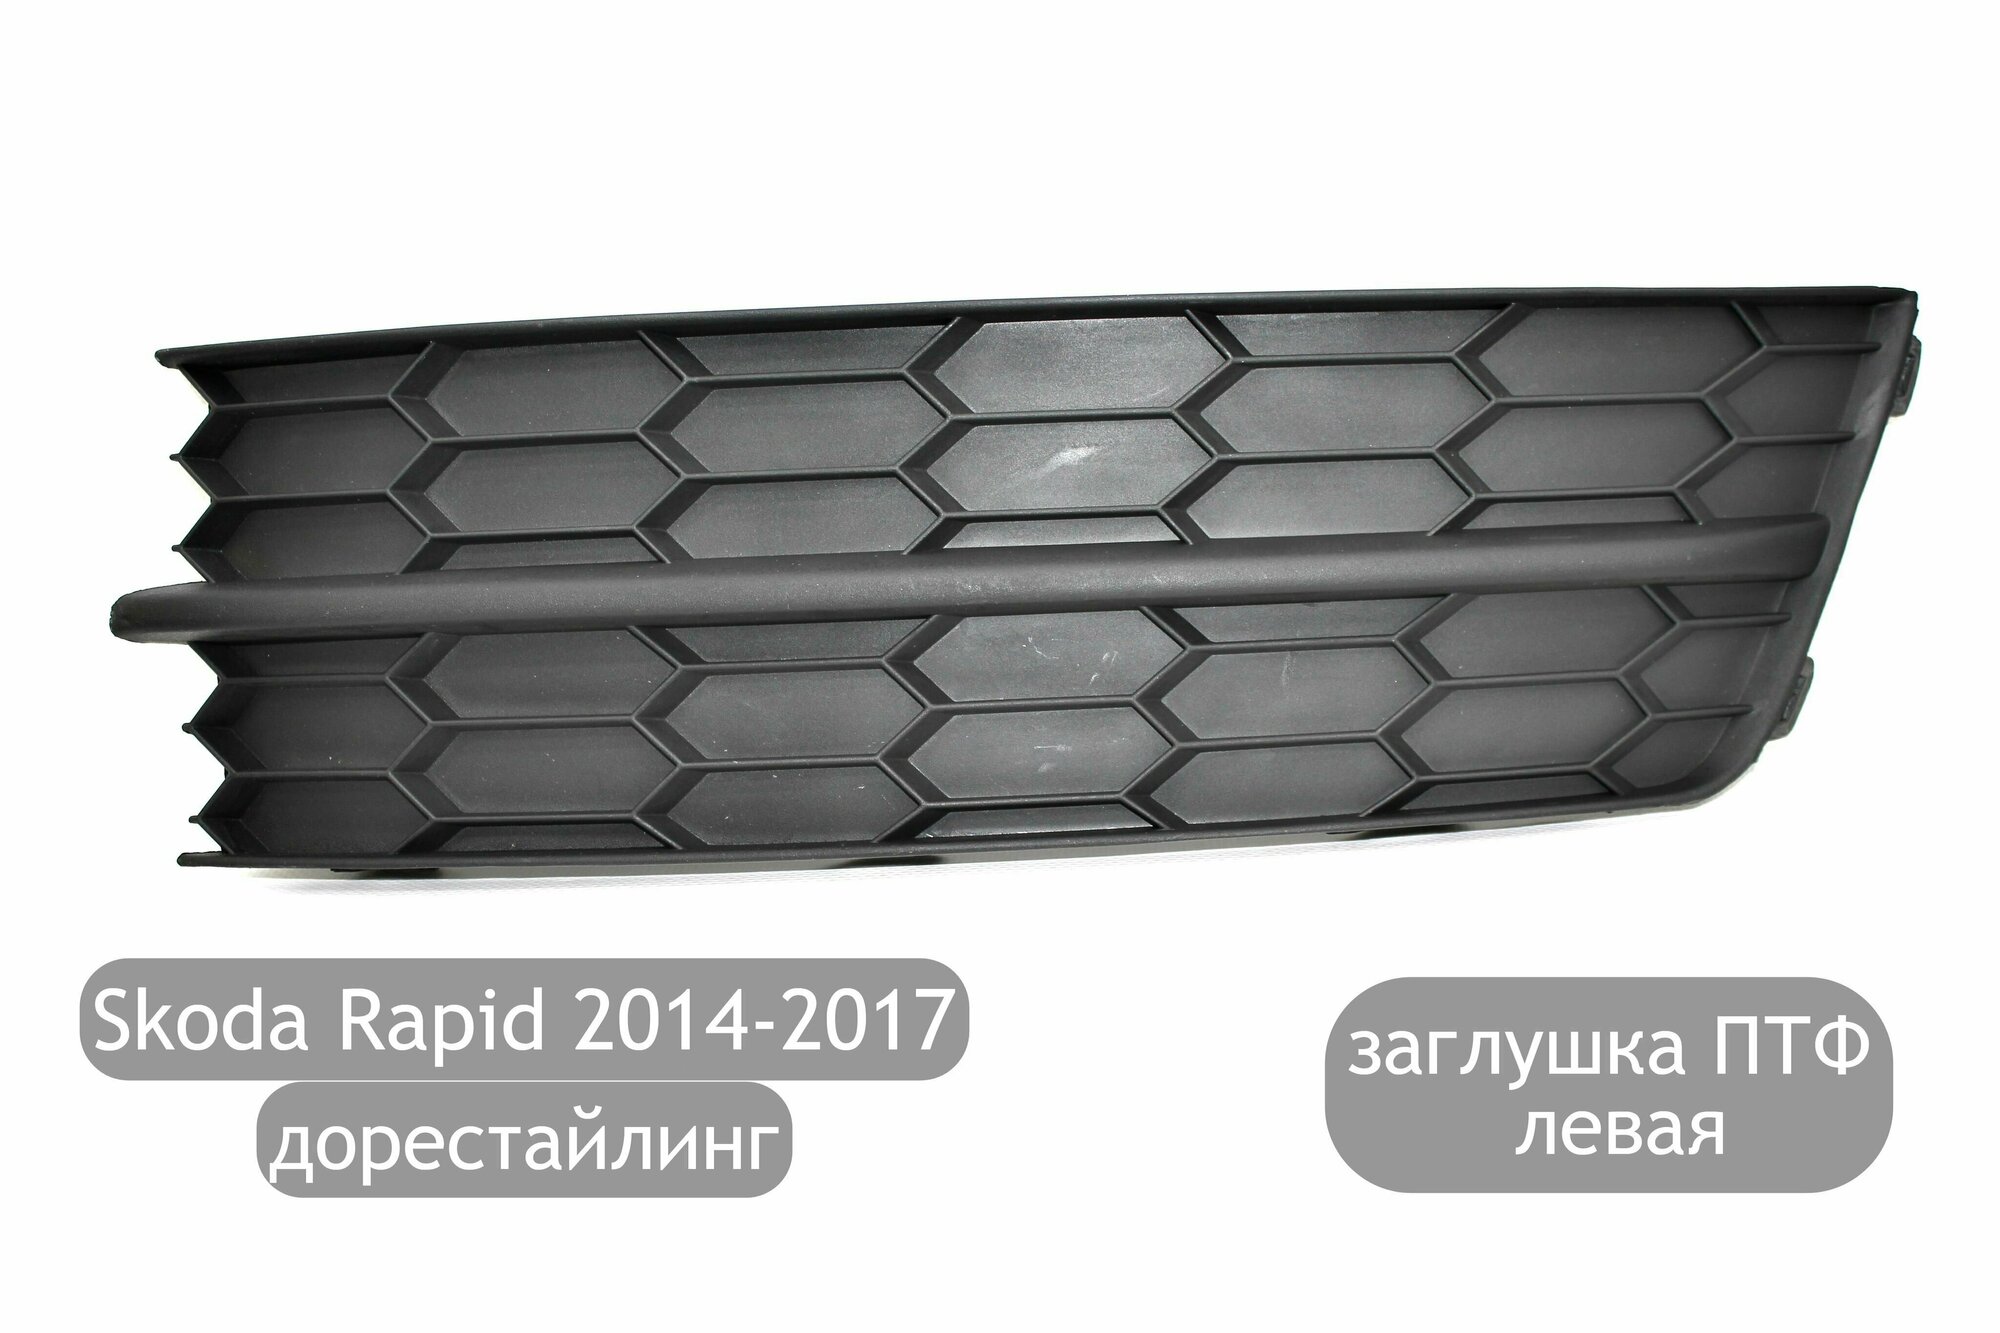 Заглушка противотуманной фары левая для Skoda Rapid 2014-2017 (дорестайлинг)